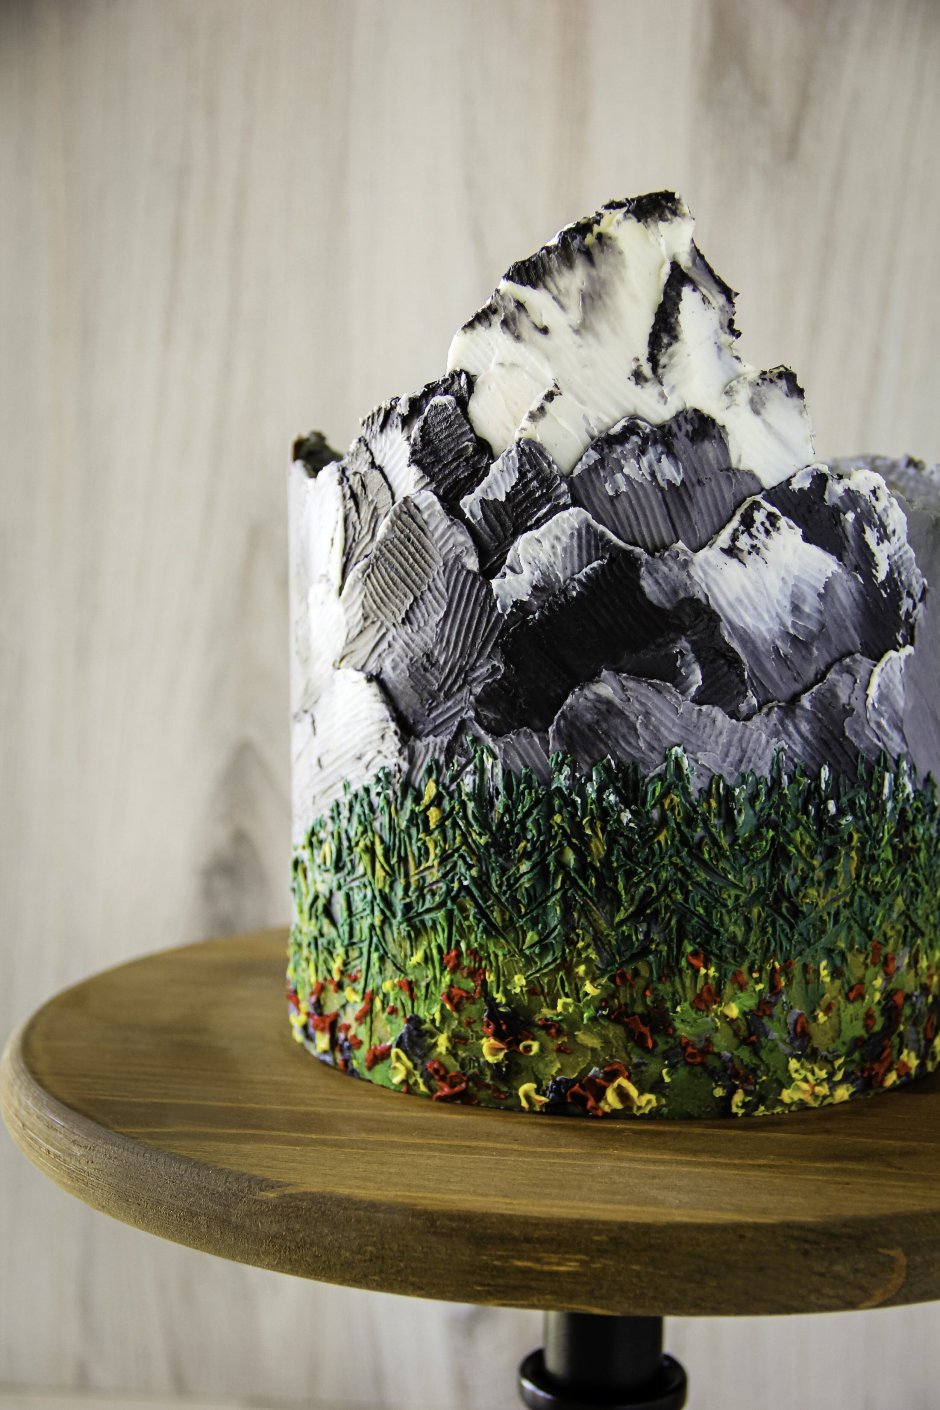 Торт в виде горы